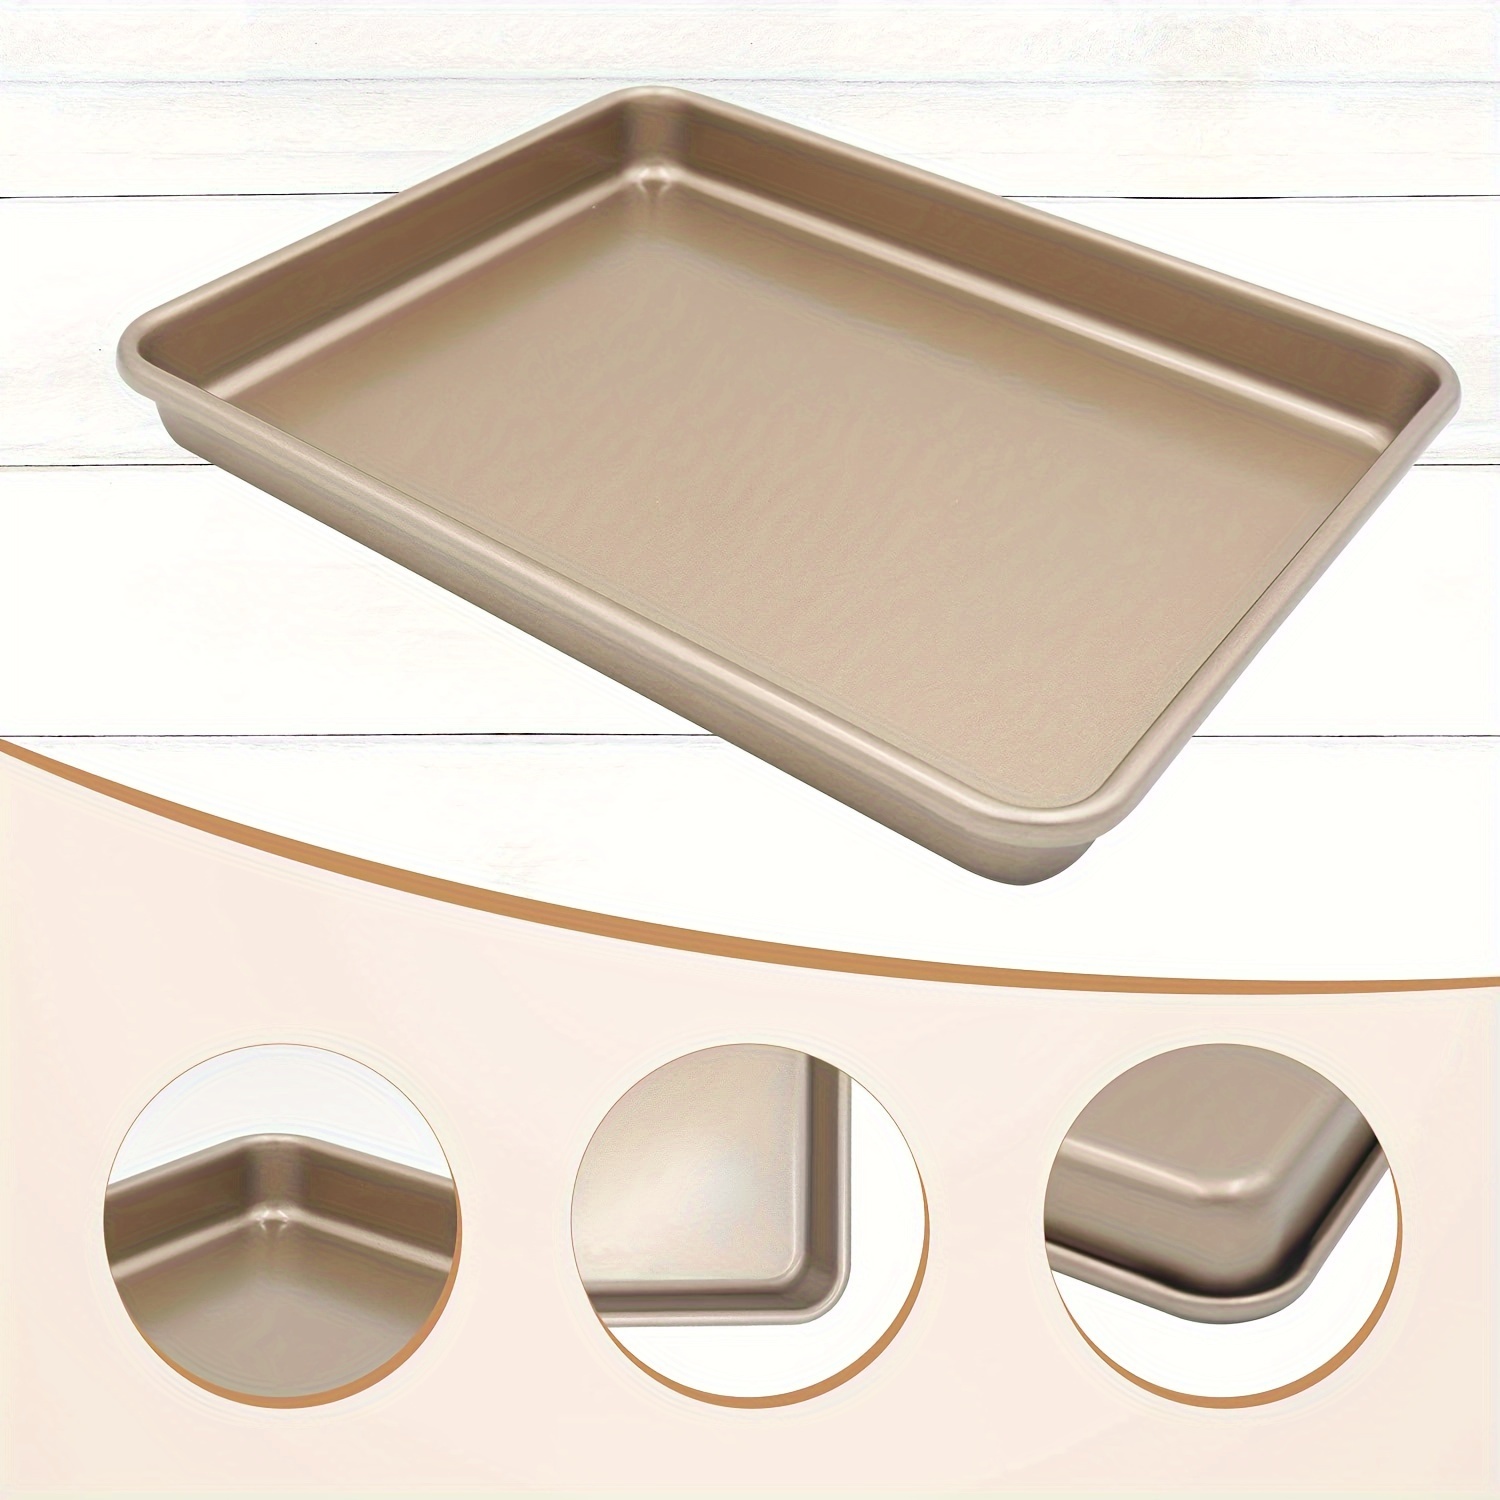 Quarter Sheet Pan Non stick Rectangular Baking Pan Carbon - Temu